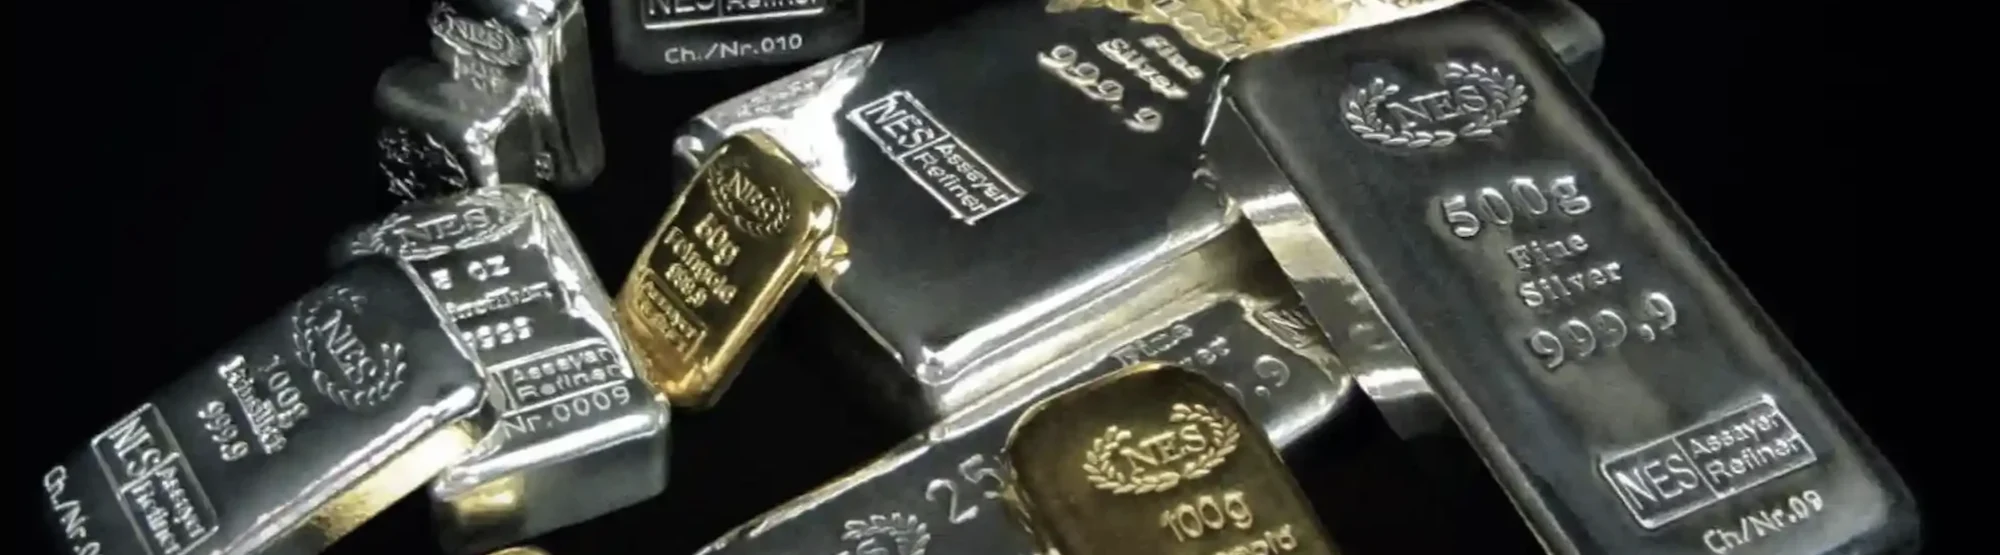 Norddeutsche Scheideanstalt Gold und Silberbarren